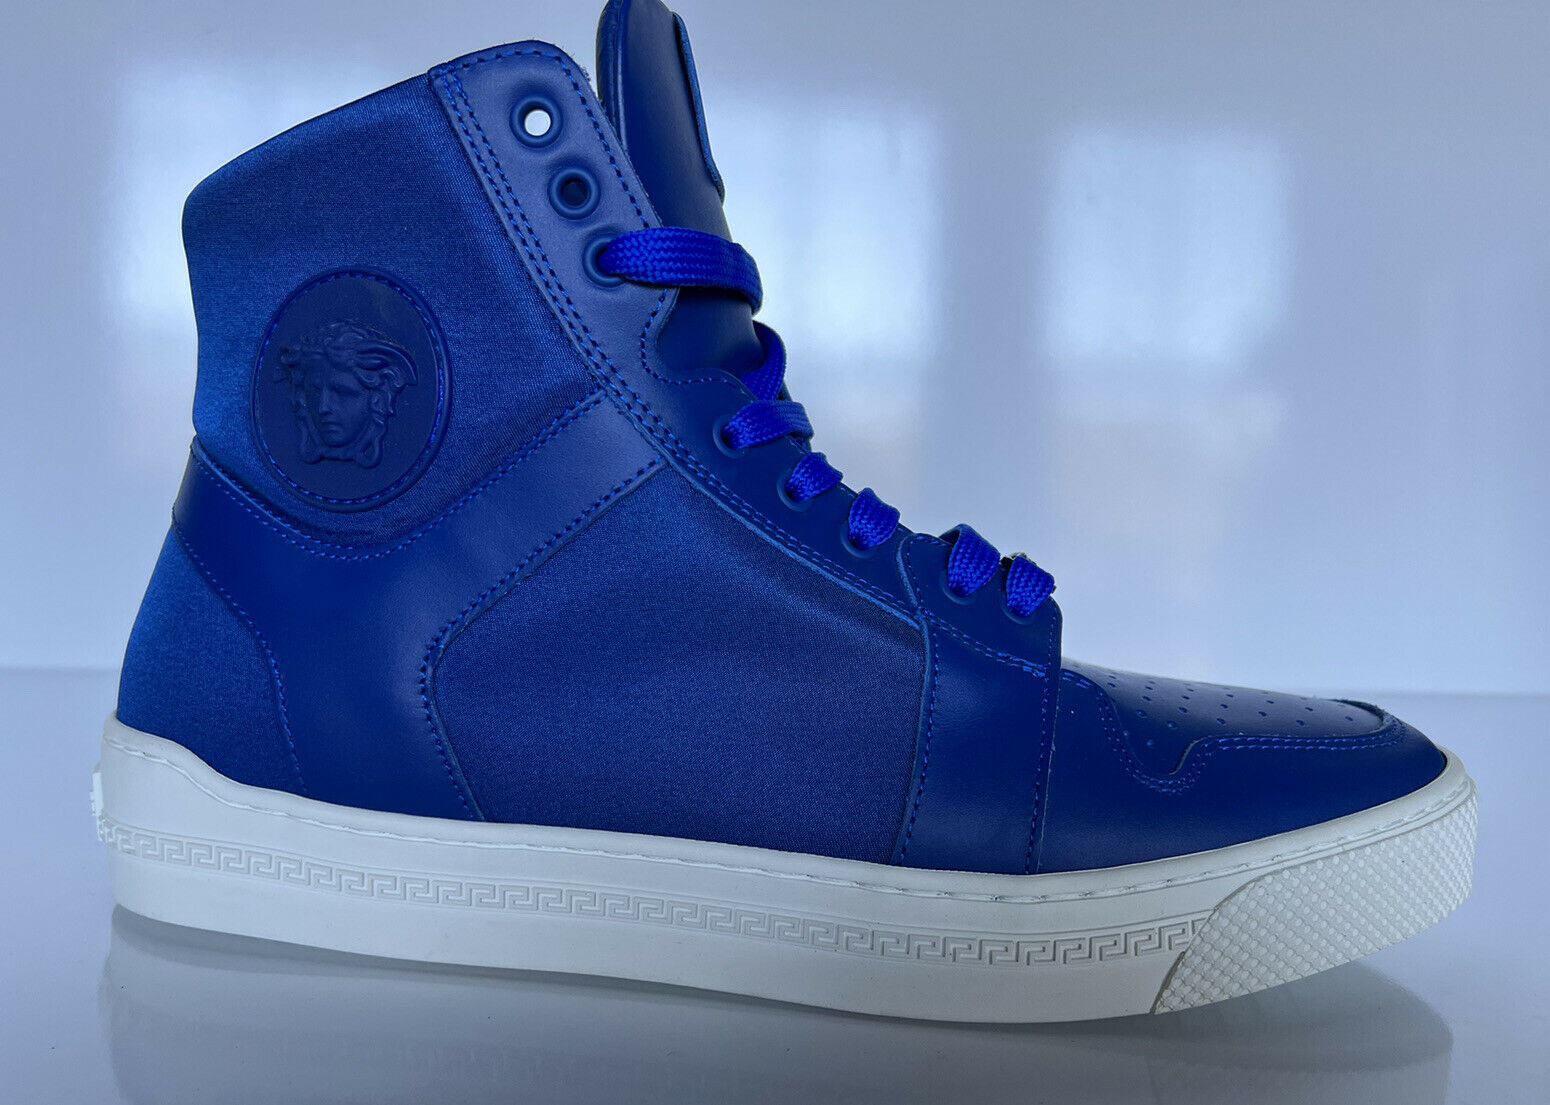 NIB 800 долларов США Versace Синие высокие кроссовки из кожи/нейлона 8 США (41 евро) DSU7828S 